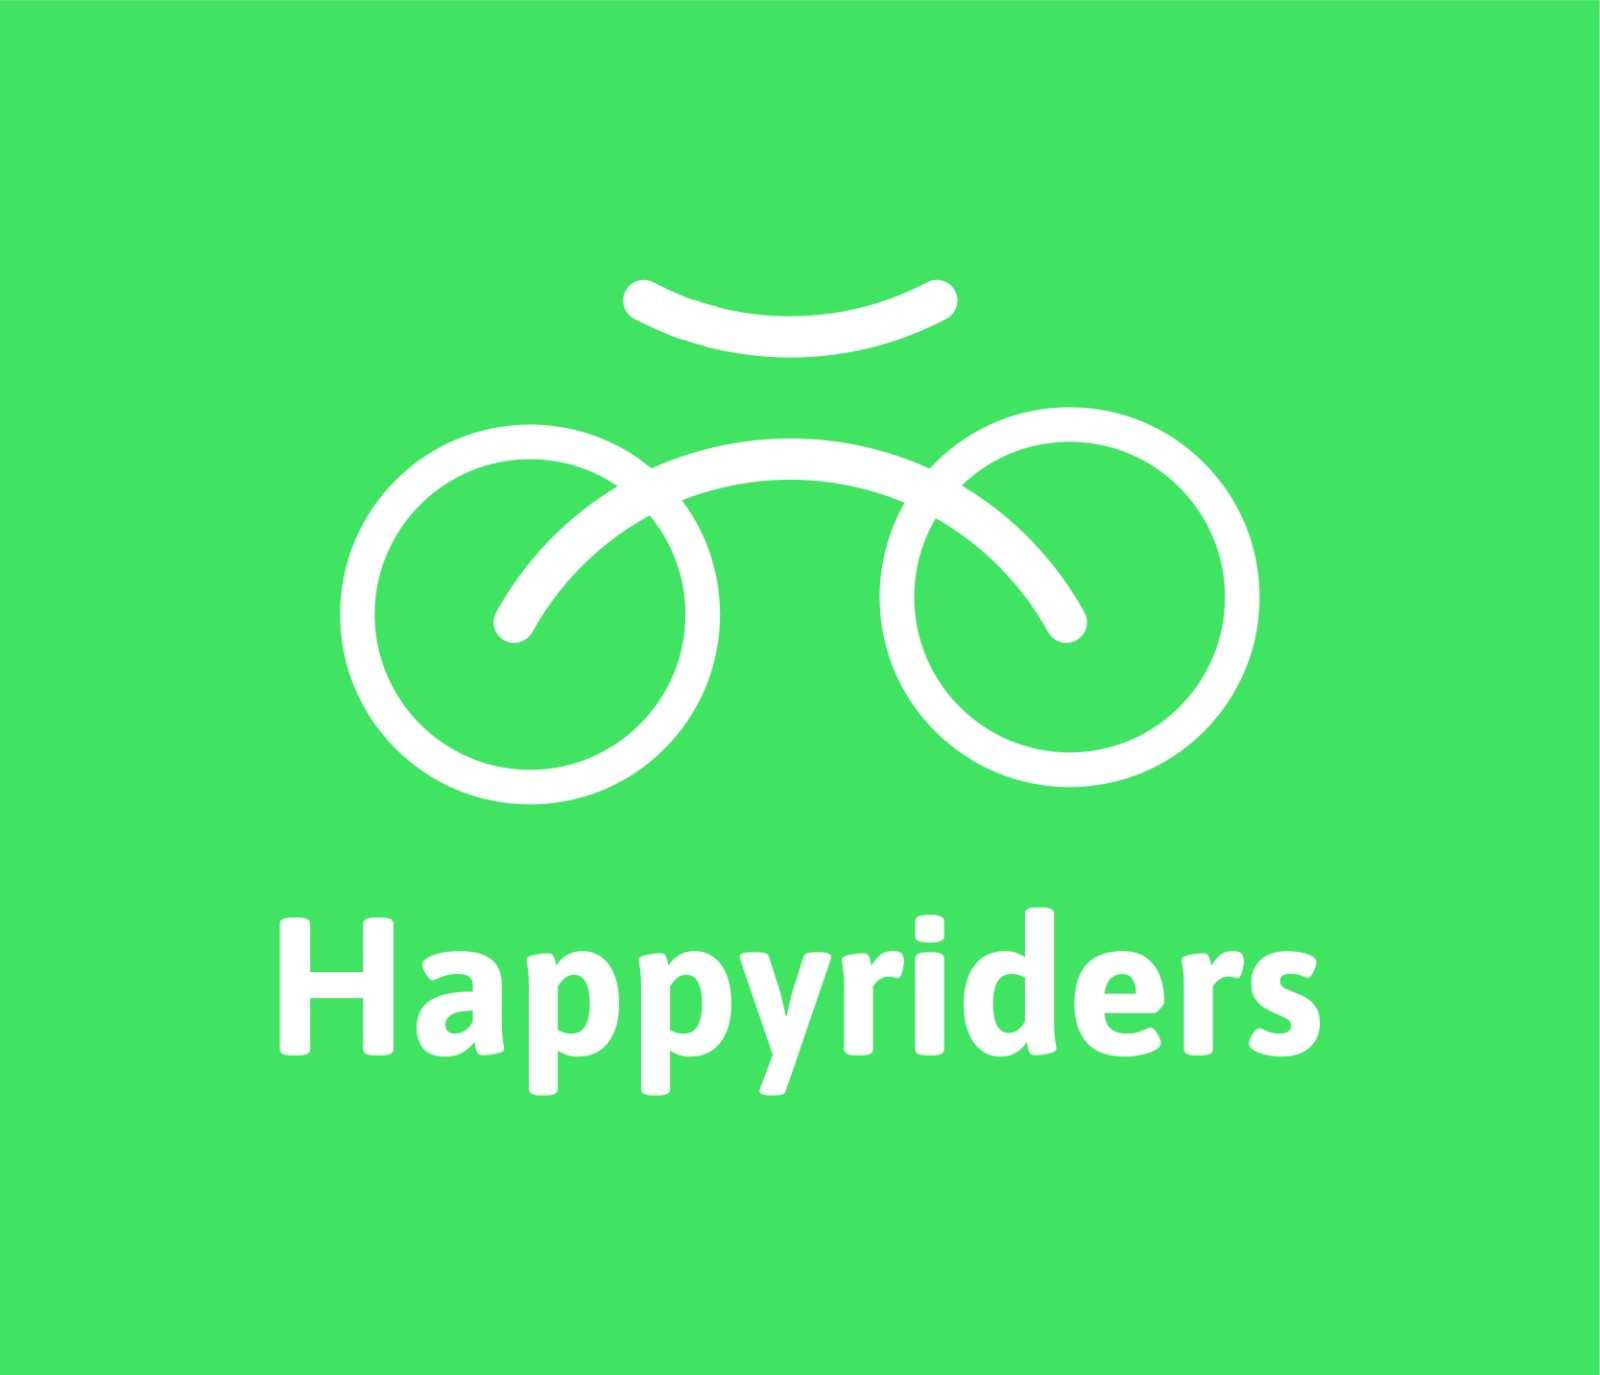 Happyriders